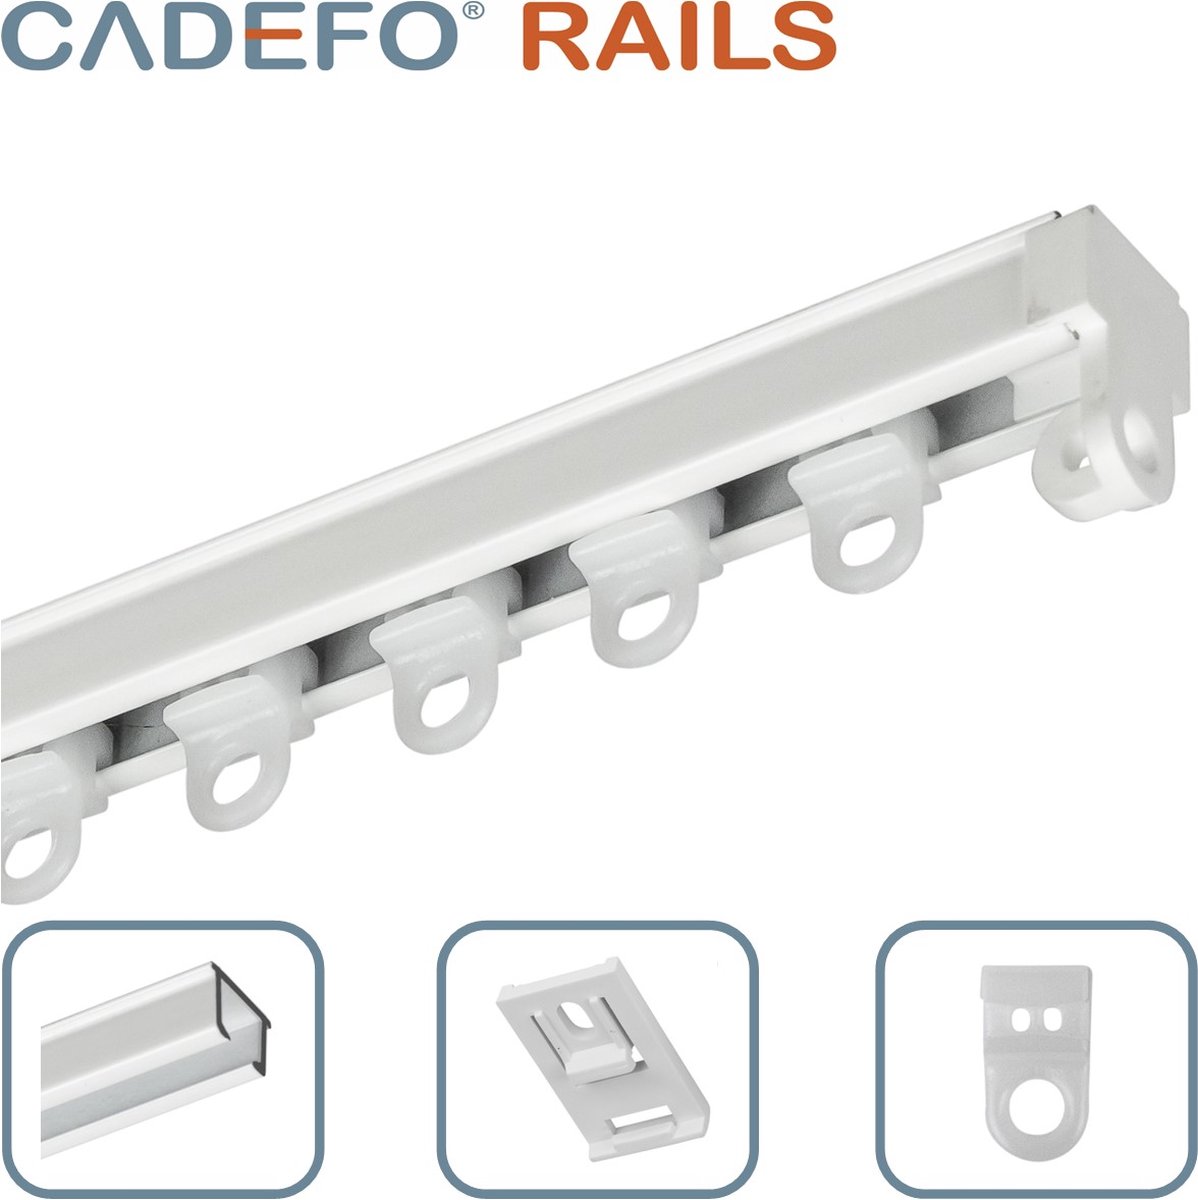 CADEFO RAILS (151 - 200 cm) Gordijnrails - Compleet op maat! - UIT 1 STUK - Leverbaar tot 6 meter - Plafondbevestiging - Lengte 177 cm